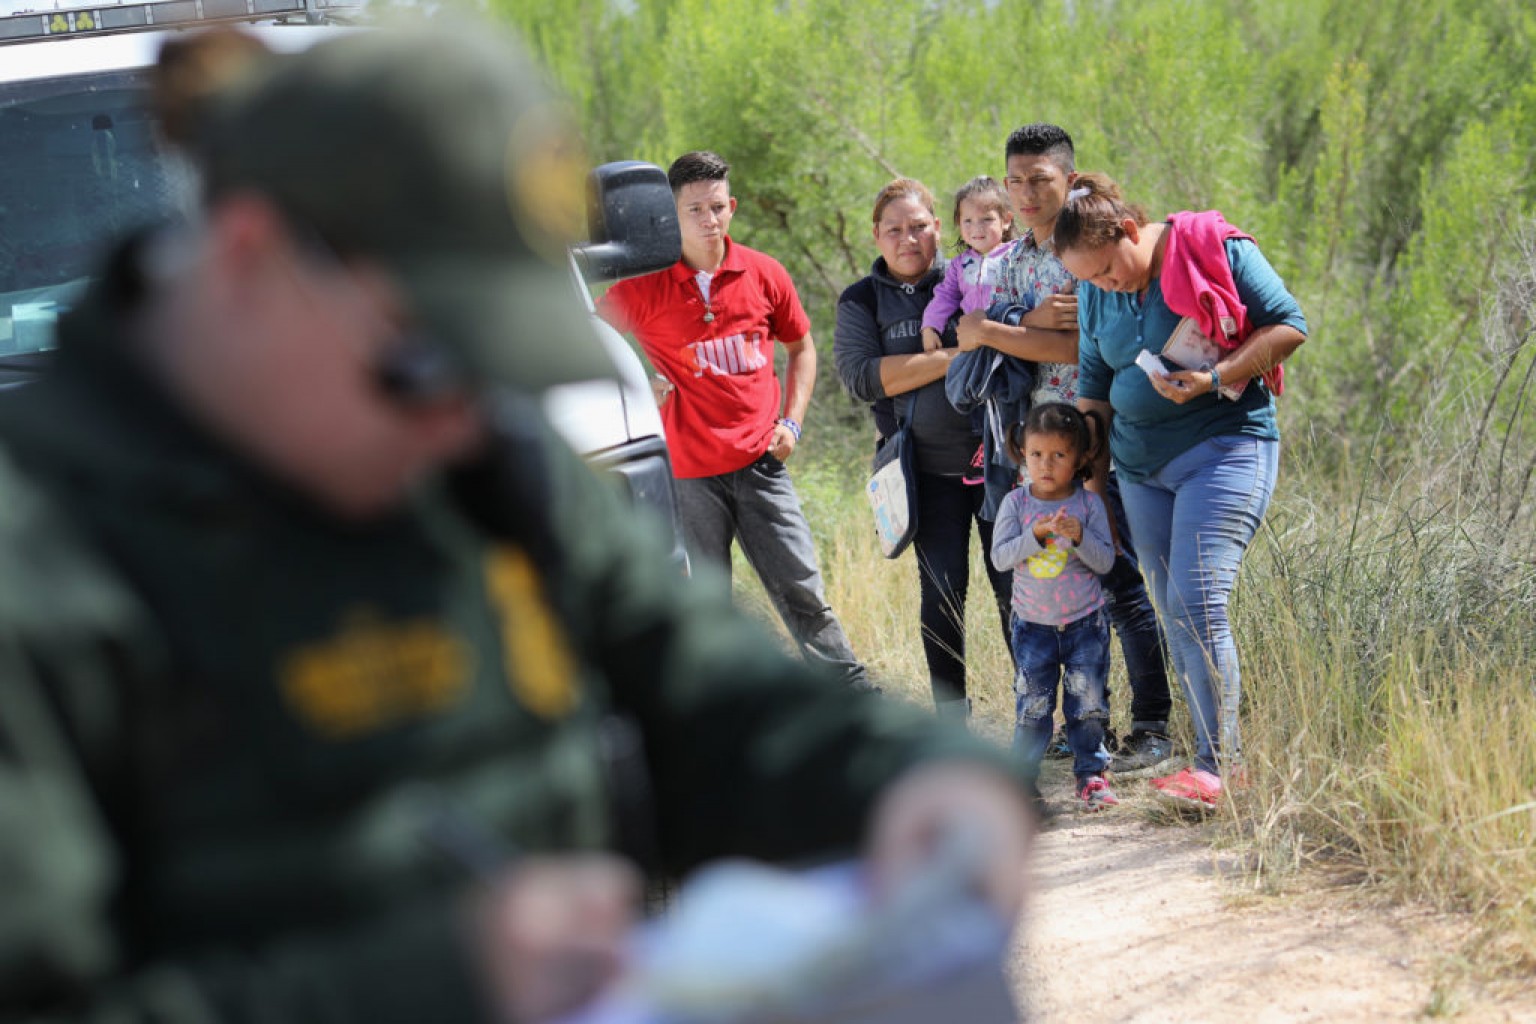 Juez suspende Temporalmente la Deportación  de Familias reunificadas